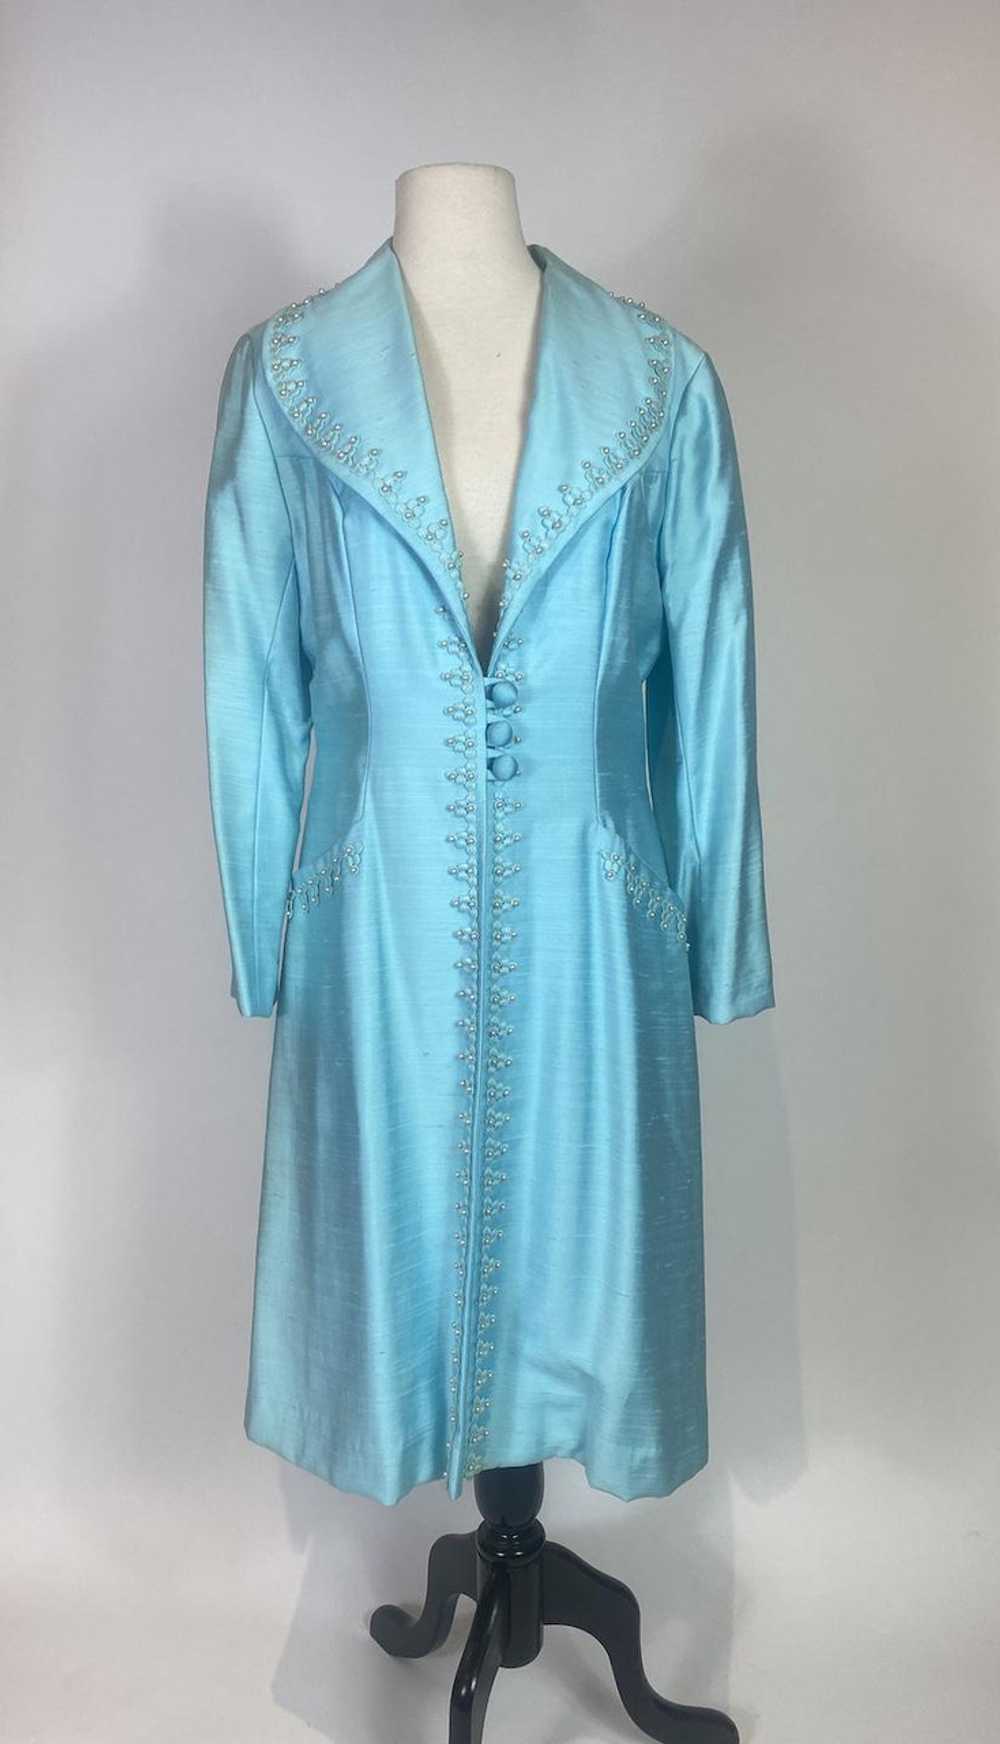 1960s Alfred Werber Blue Embellished Coat - image 1